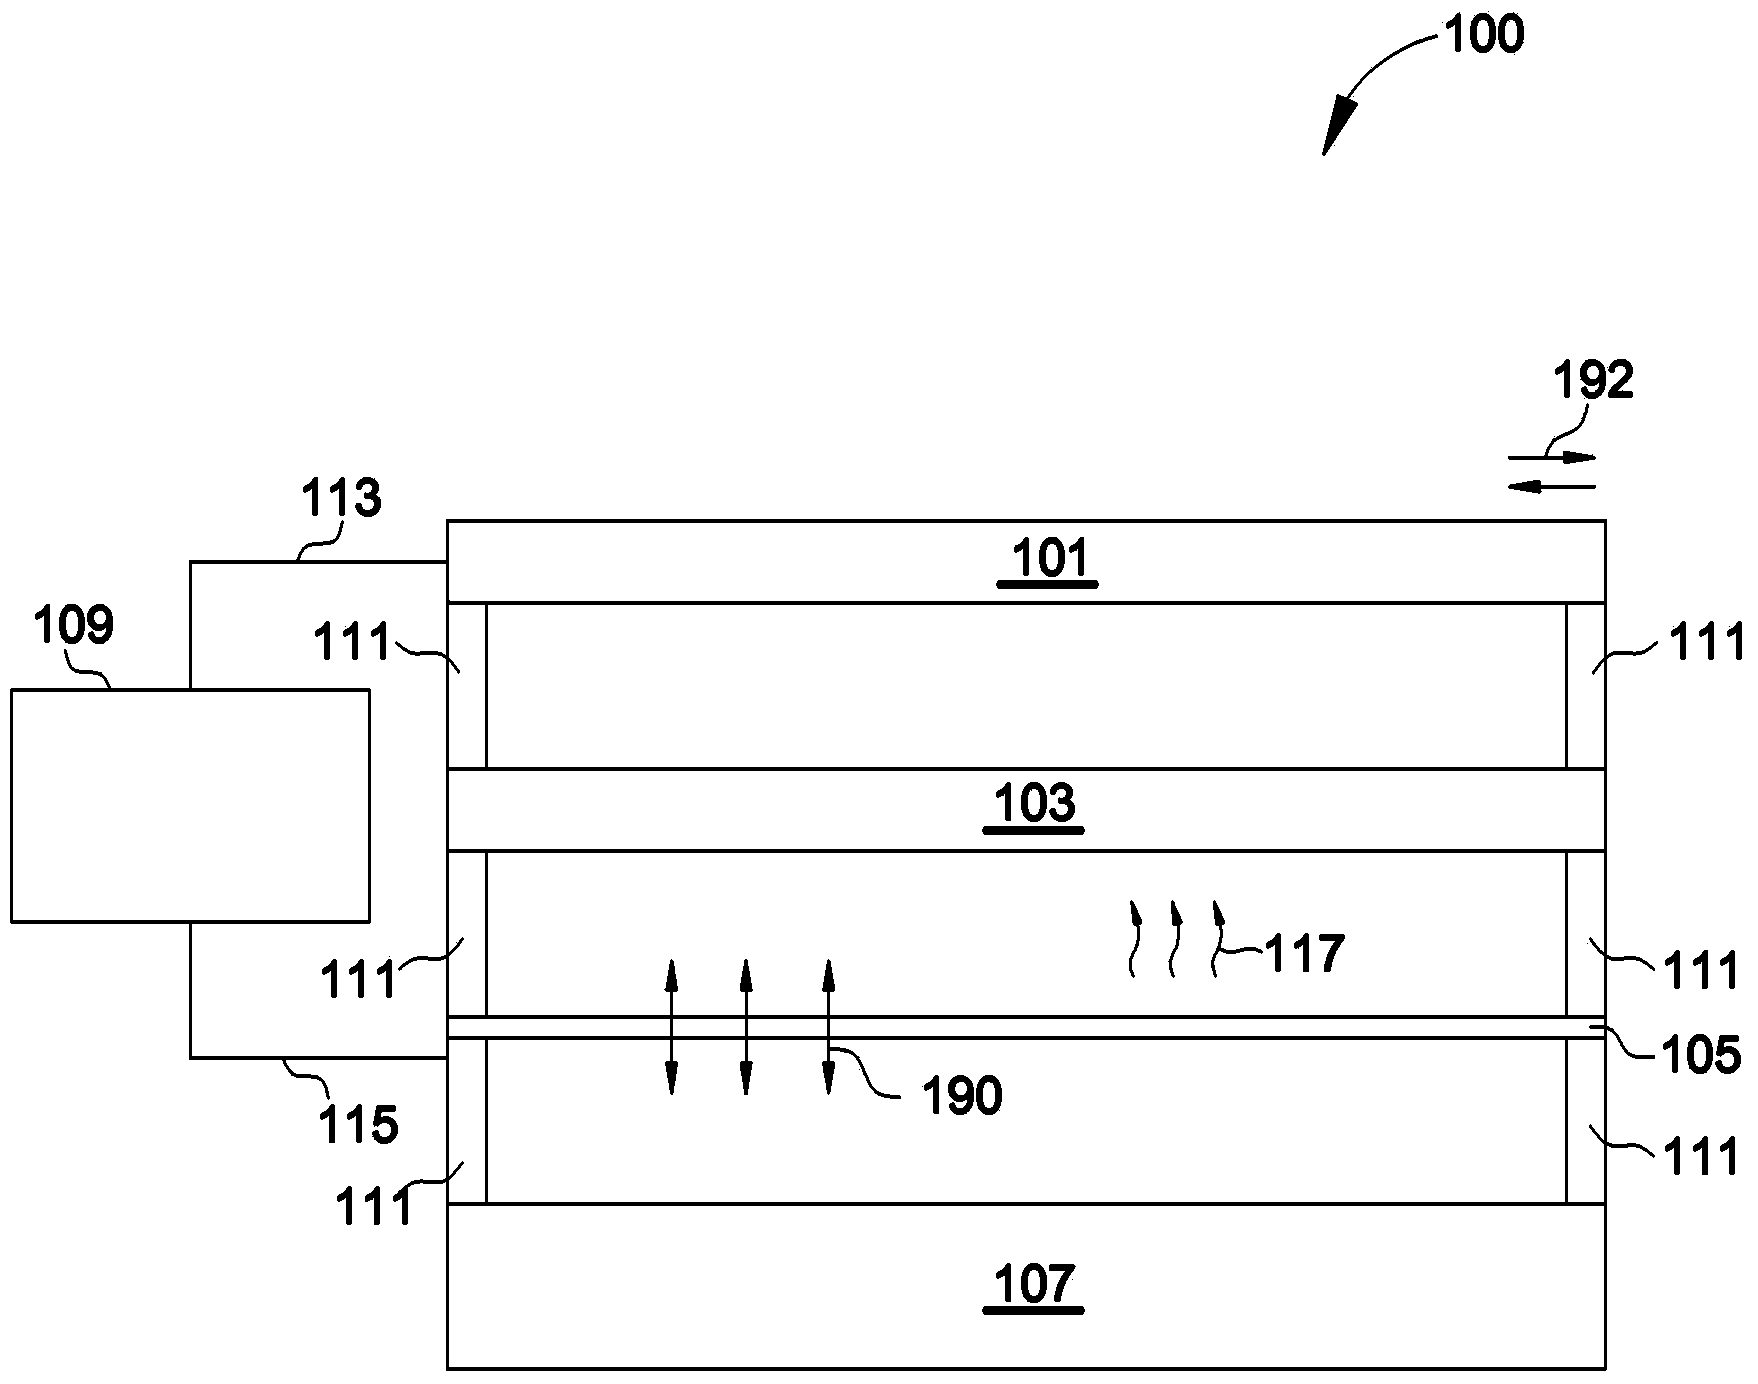 Techniques for generating audio signals